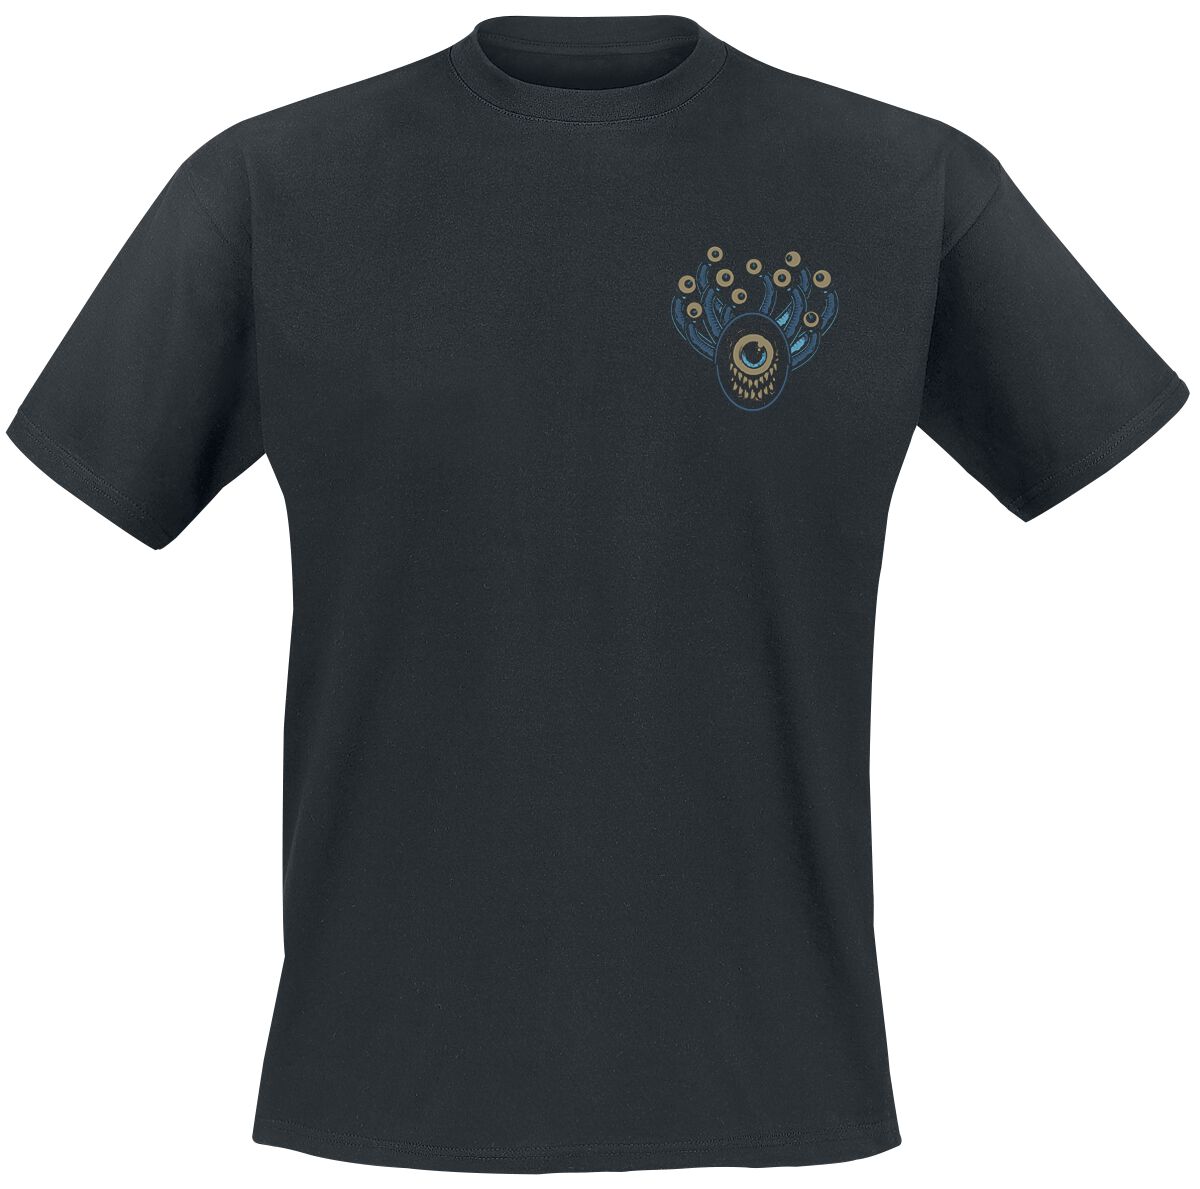 Dungeons and Dragons - Gaming T-Shirt - Hydro74 - Beholder - S bis XXL - für Männer - Größe XL - schwarz  - EMP exklusives Merchandise!